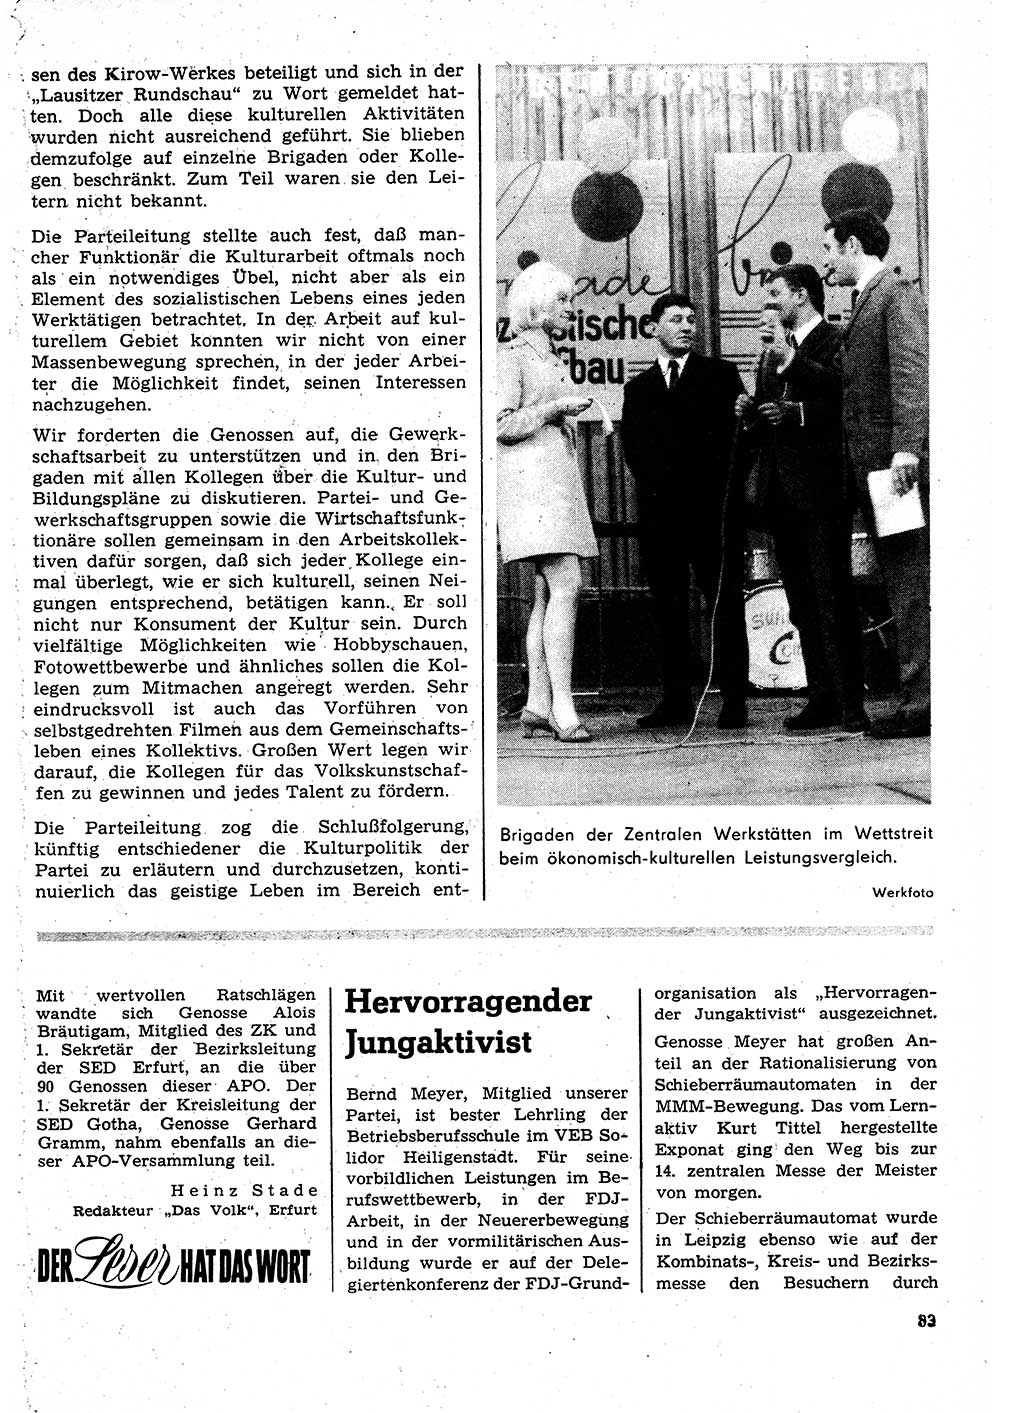 Neuer Weg (NW), Organ des Zentralkomitees (ZK) der SED (Sozialistische Einheitspartei Deutschlands) für Fragen des Parteilebens, 27. Jahrgang [Deutsche Demokratische Republik (DDR)] 1972, Seite 83 (NW ZK SED DDR 1972, S. 83)